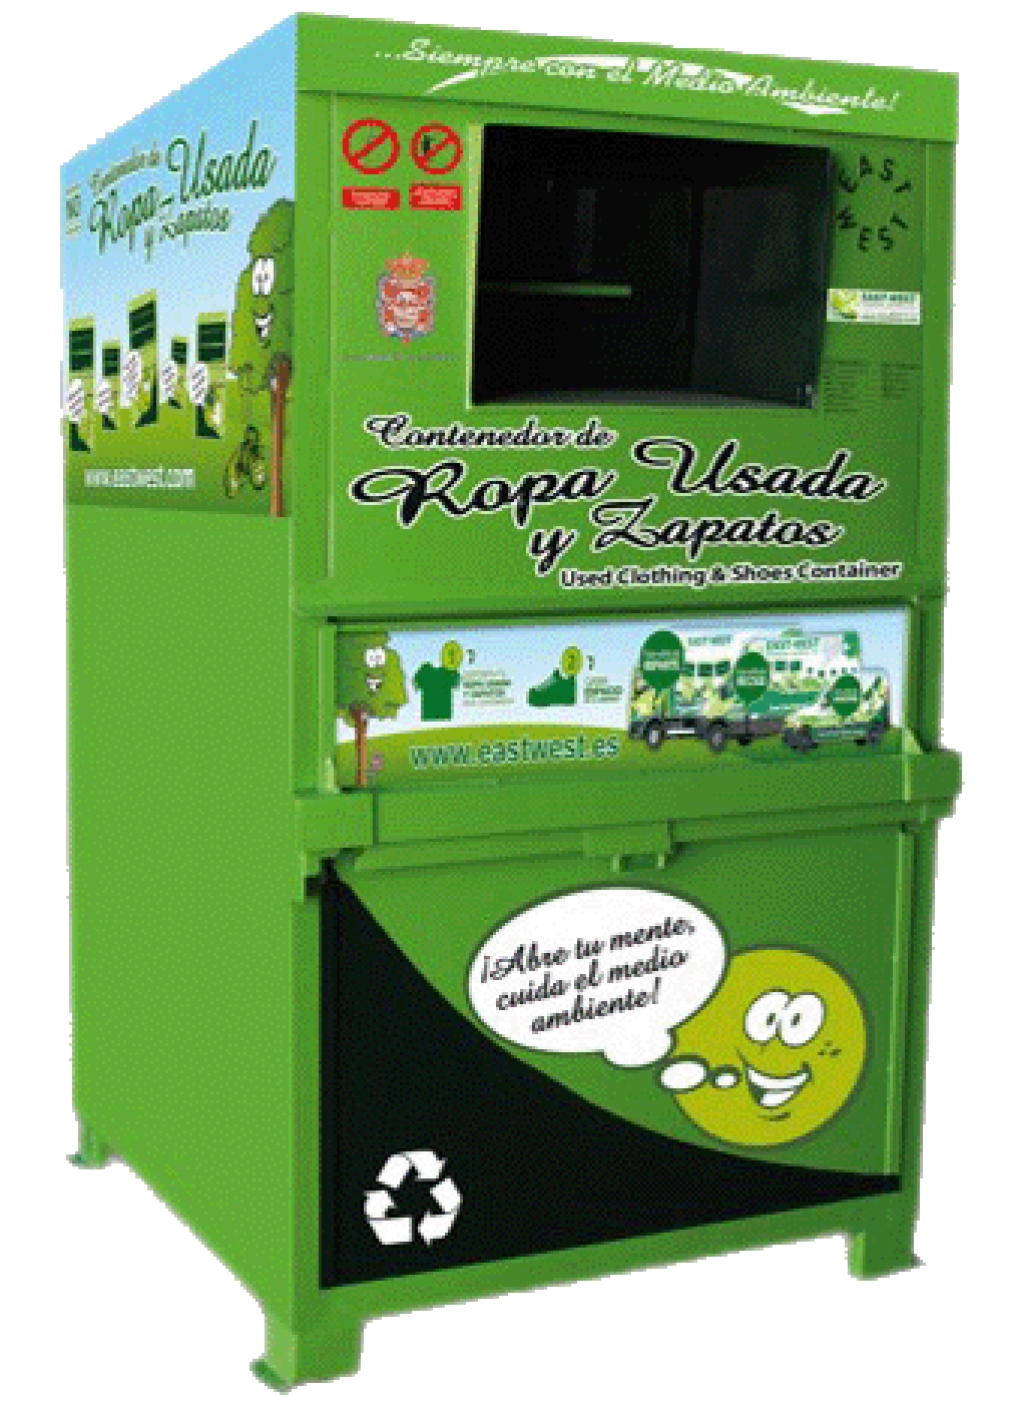 En 2018, los seteros han depositado 2.134 kilos de ropa usada en los tres contenedores de reciclaje habilitados en Quer